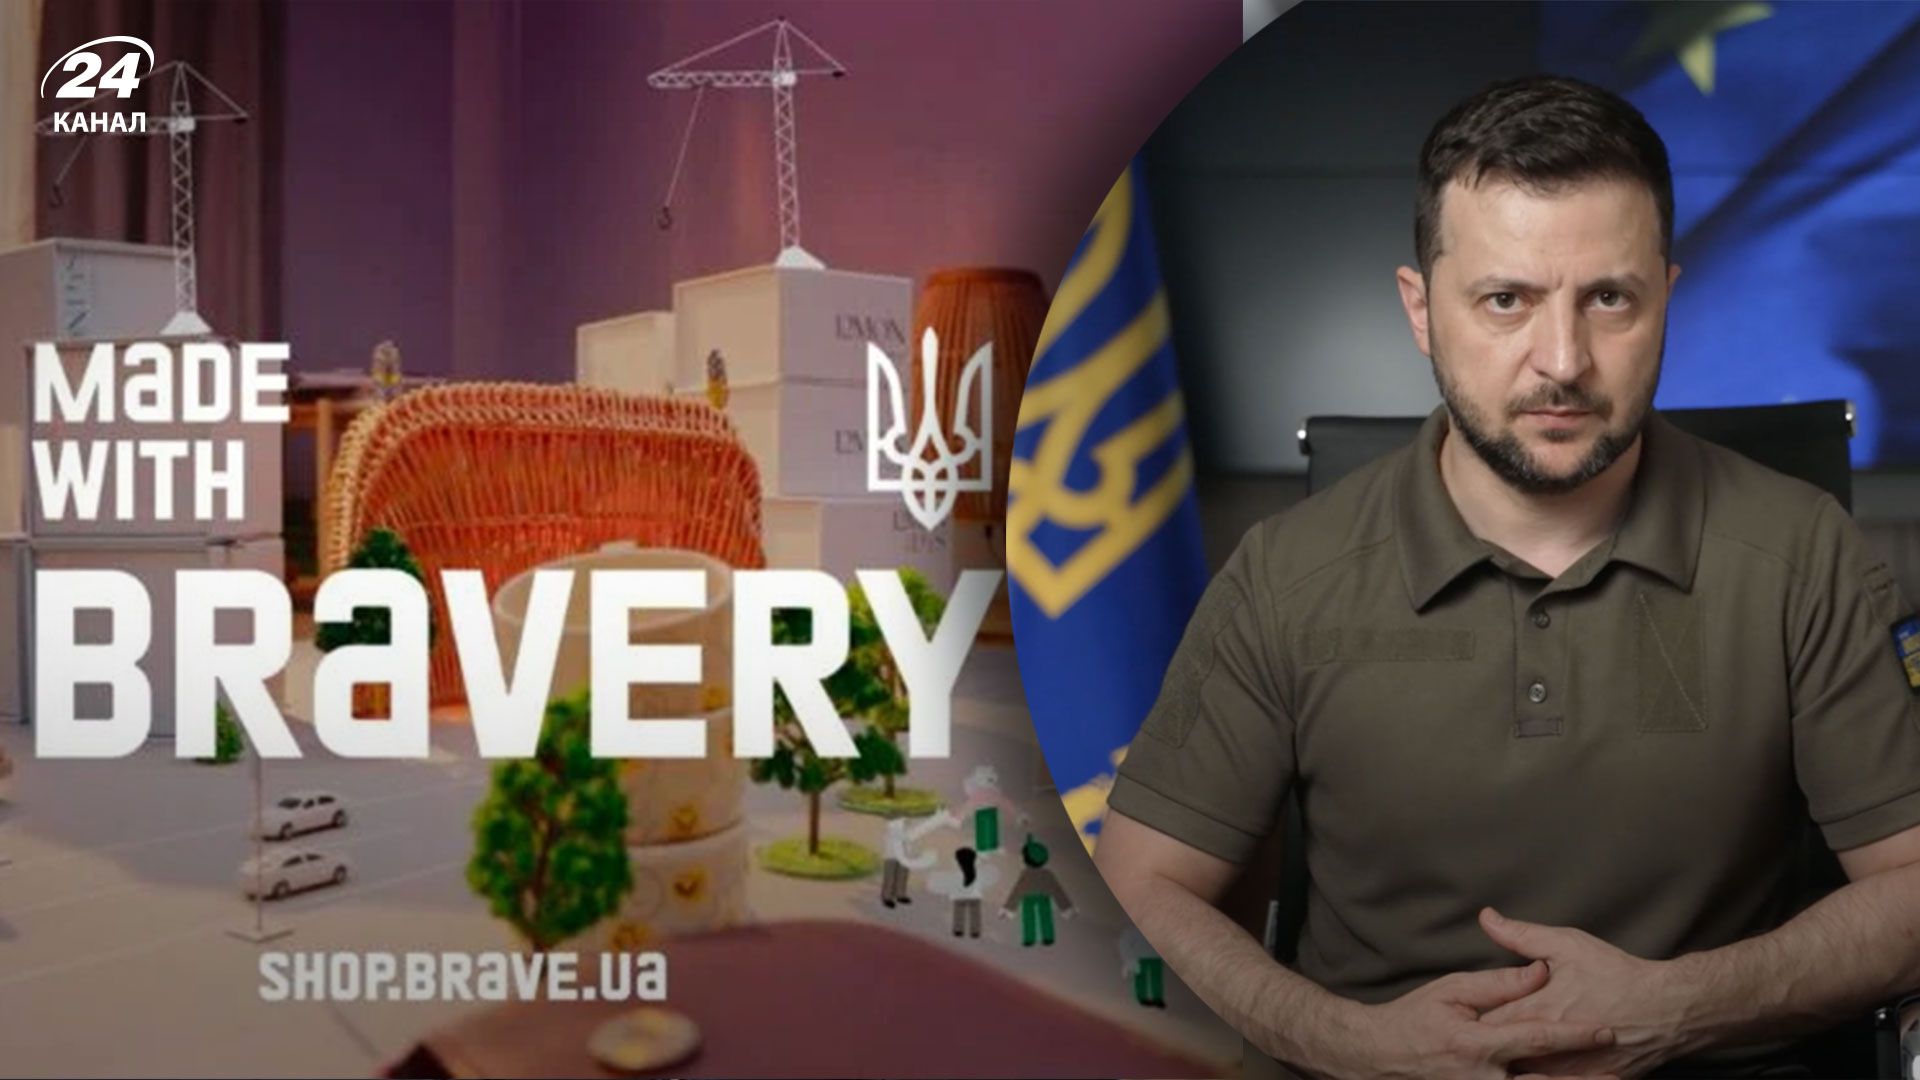 Зеленський оголосив про запуск офіційного маркетплейсу України